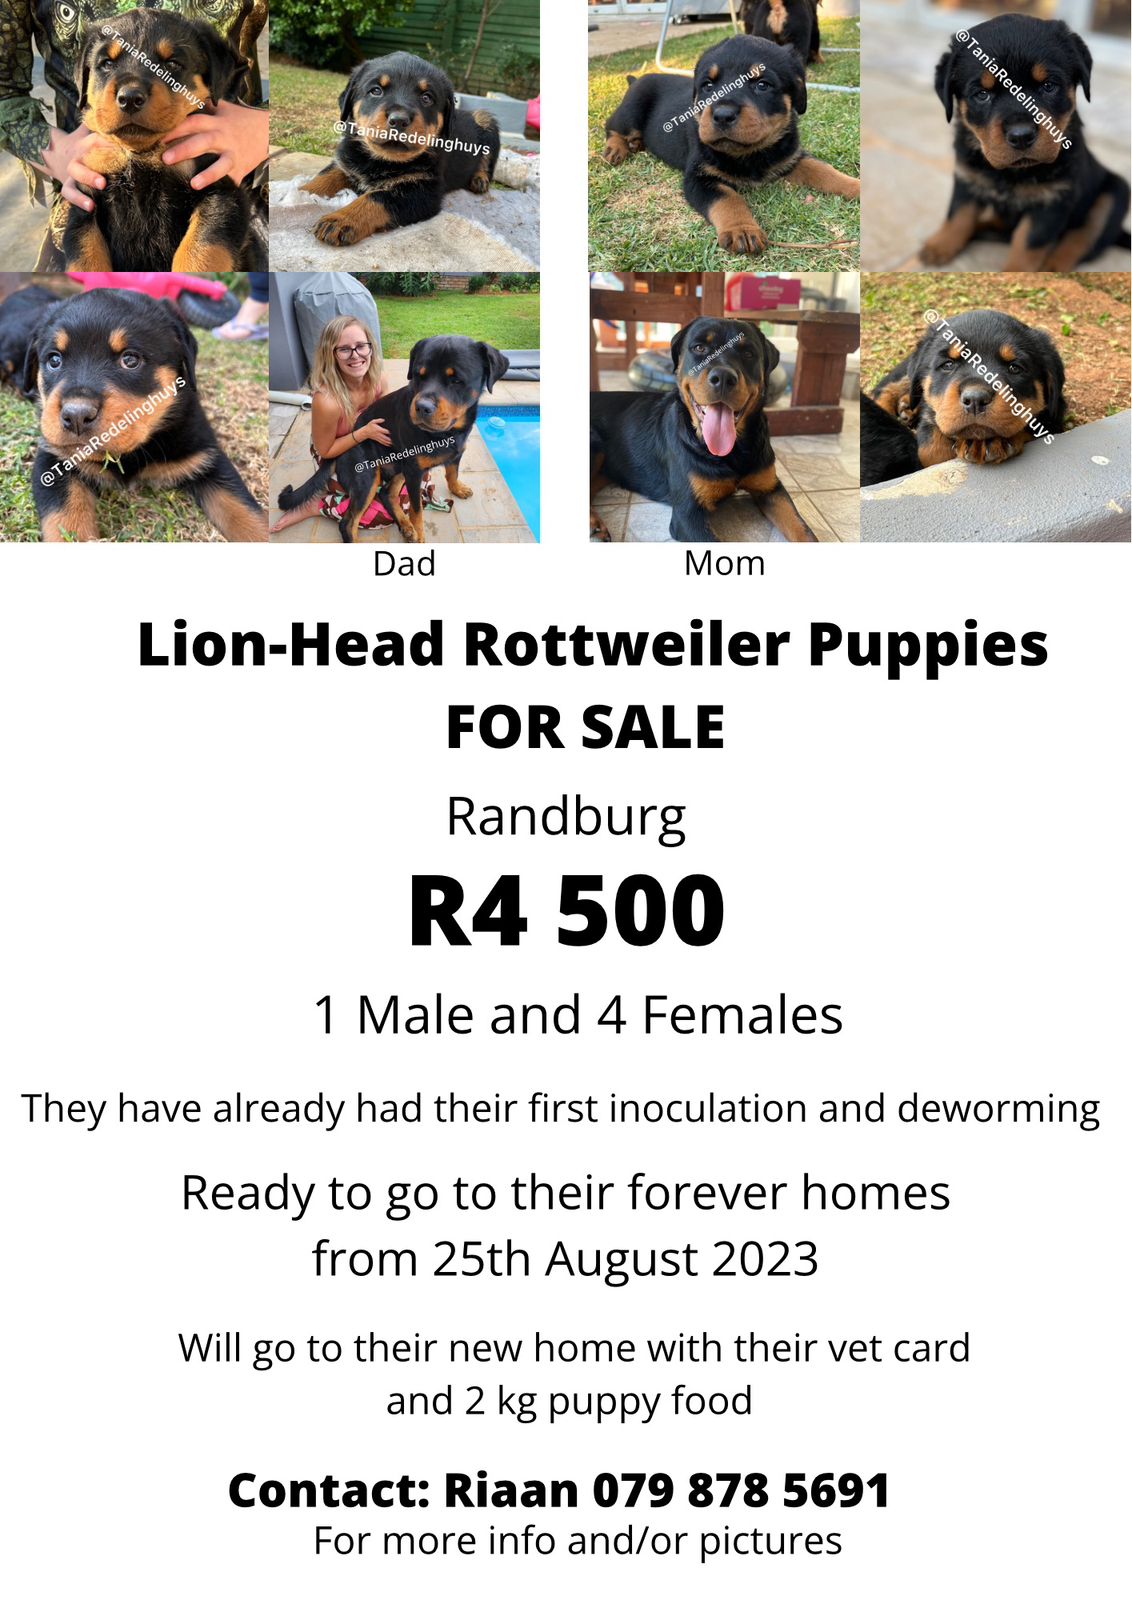 Rottweiler Puppies in Johannesburg (26/08/2023)